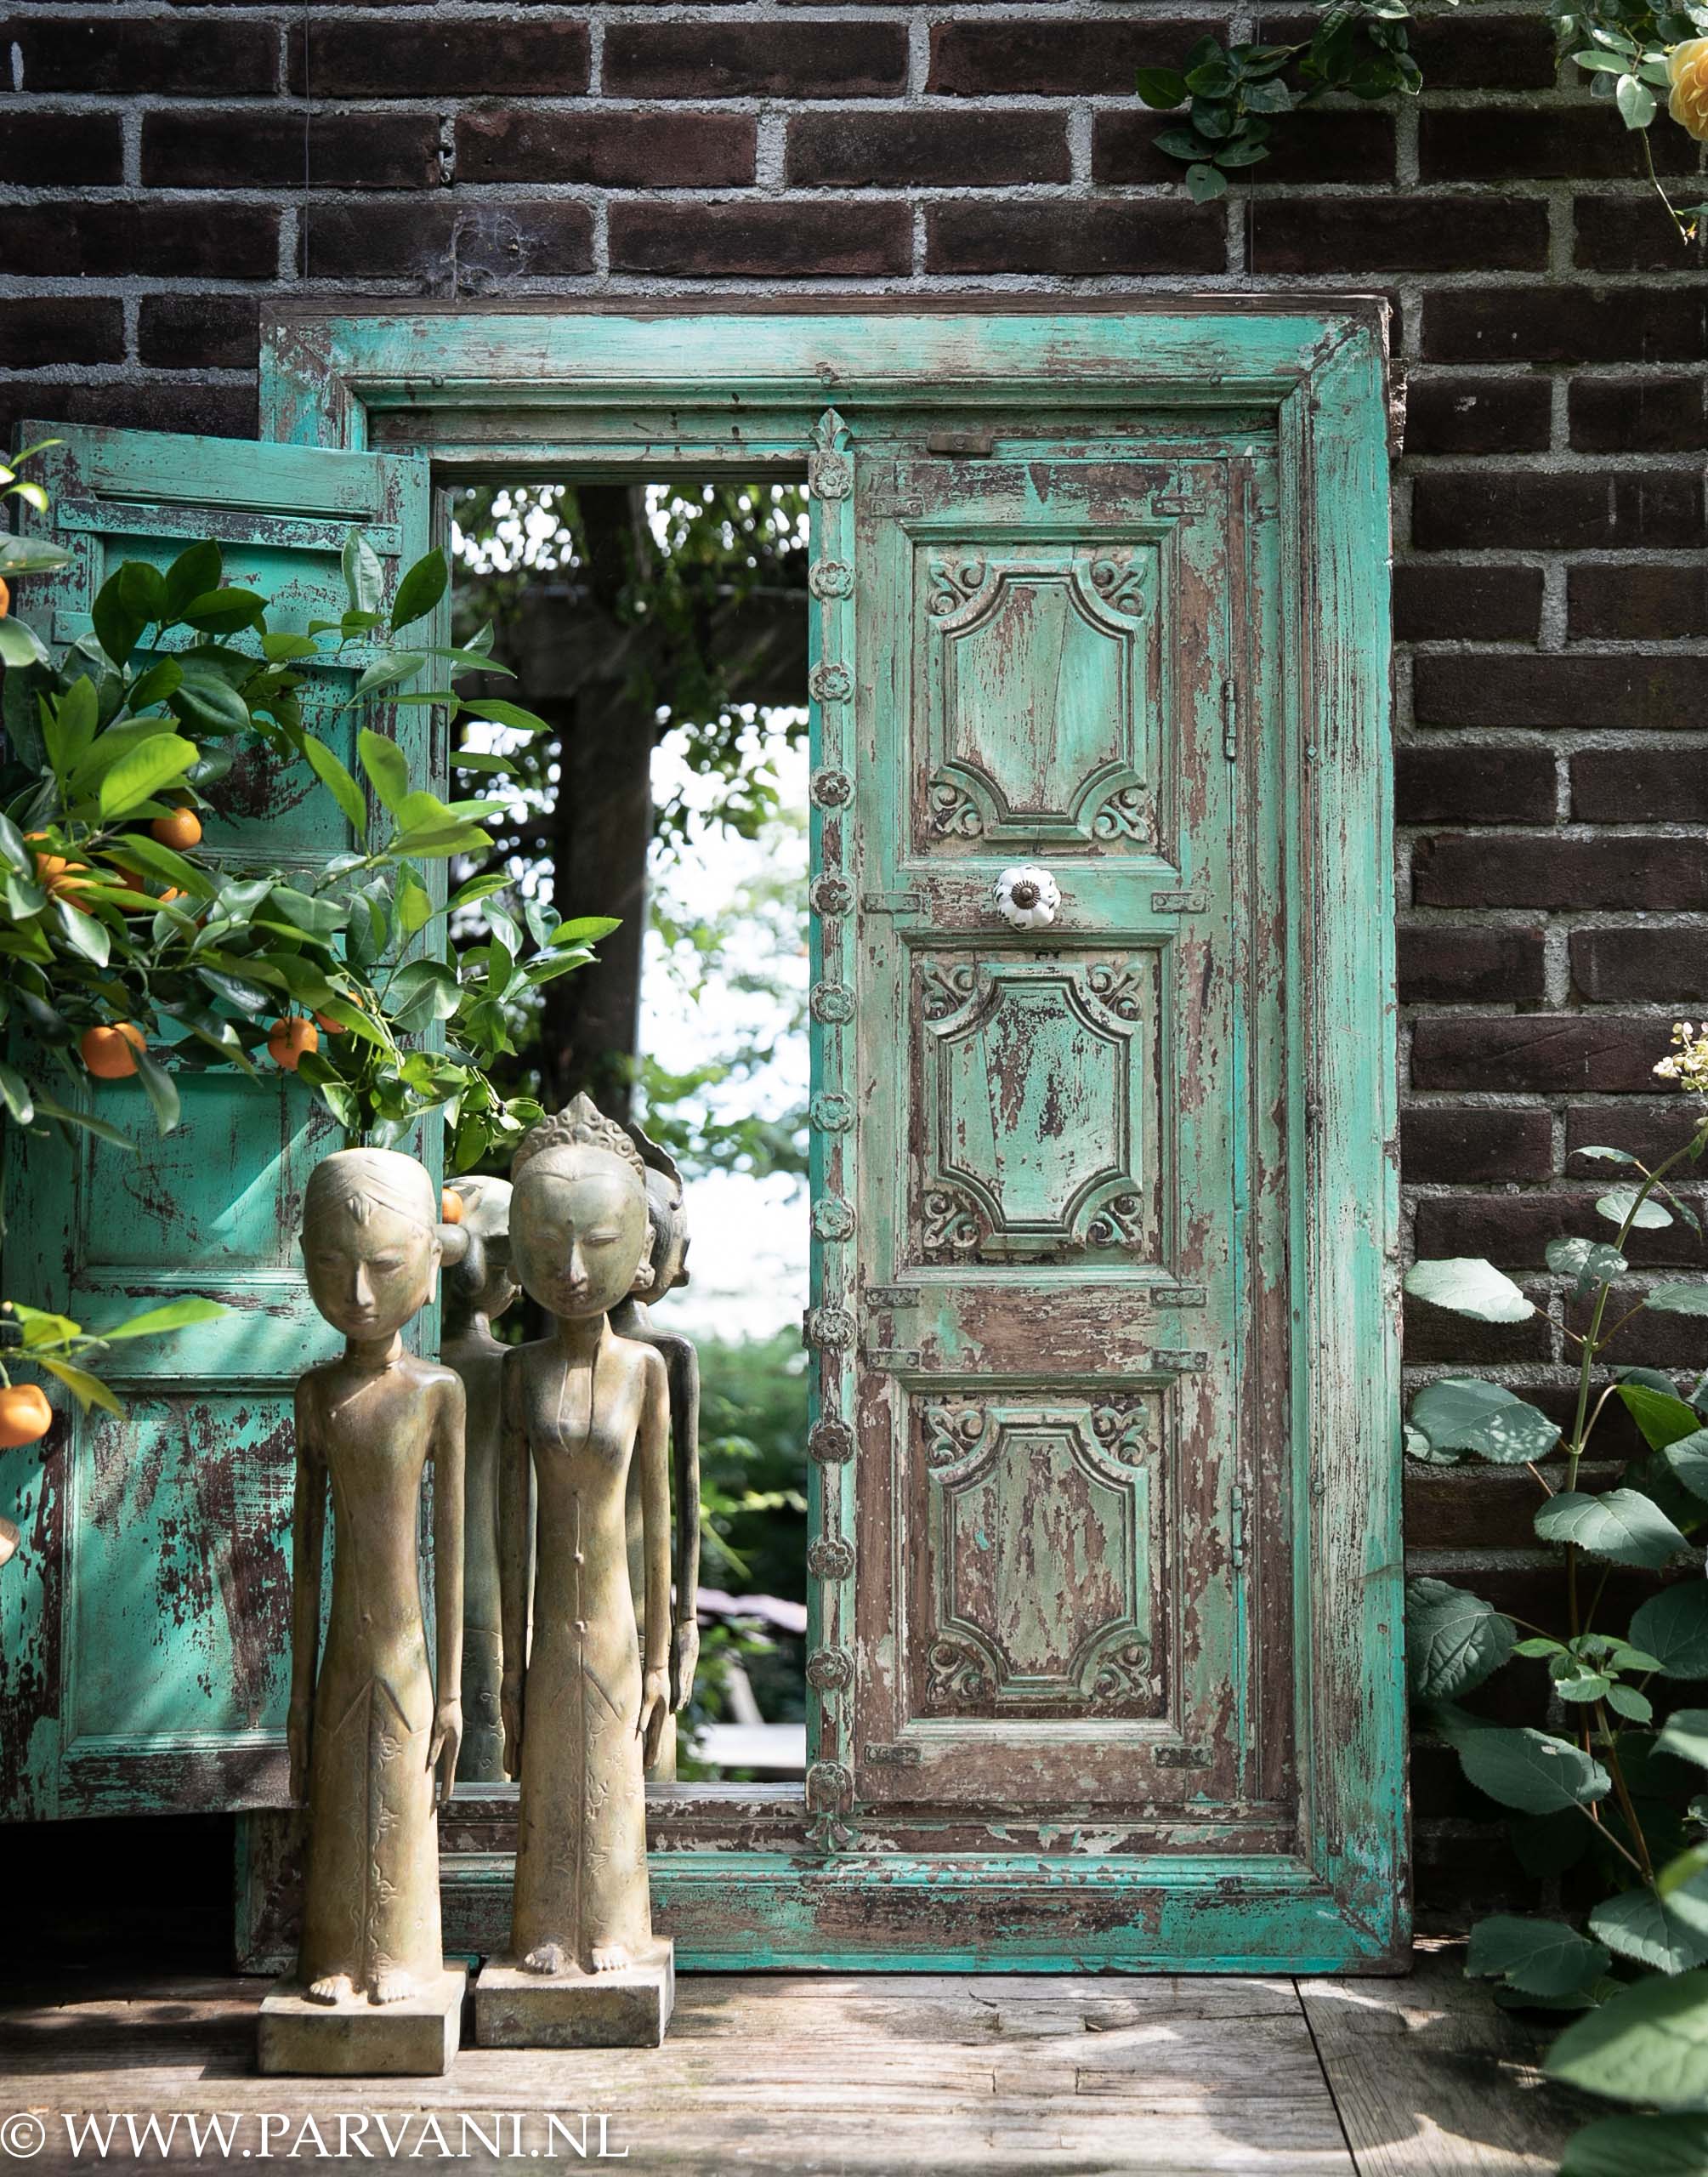 Groot groen turquoise raamwerk met deurtjes en spiegel uit India met bronzen Lorobloyo echtpaar uit Indonesië